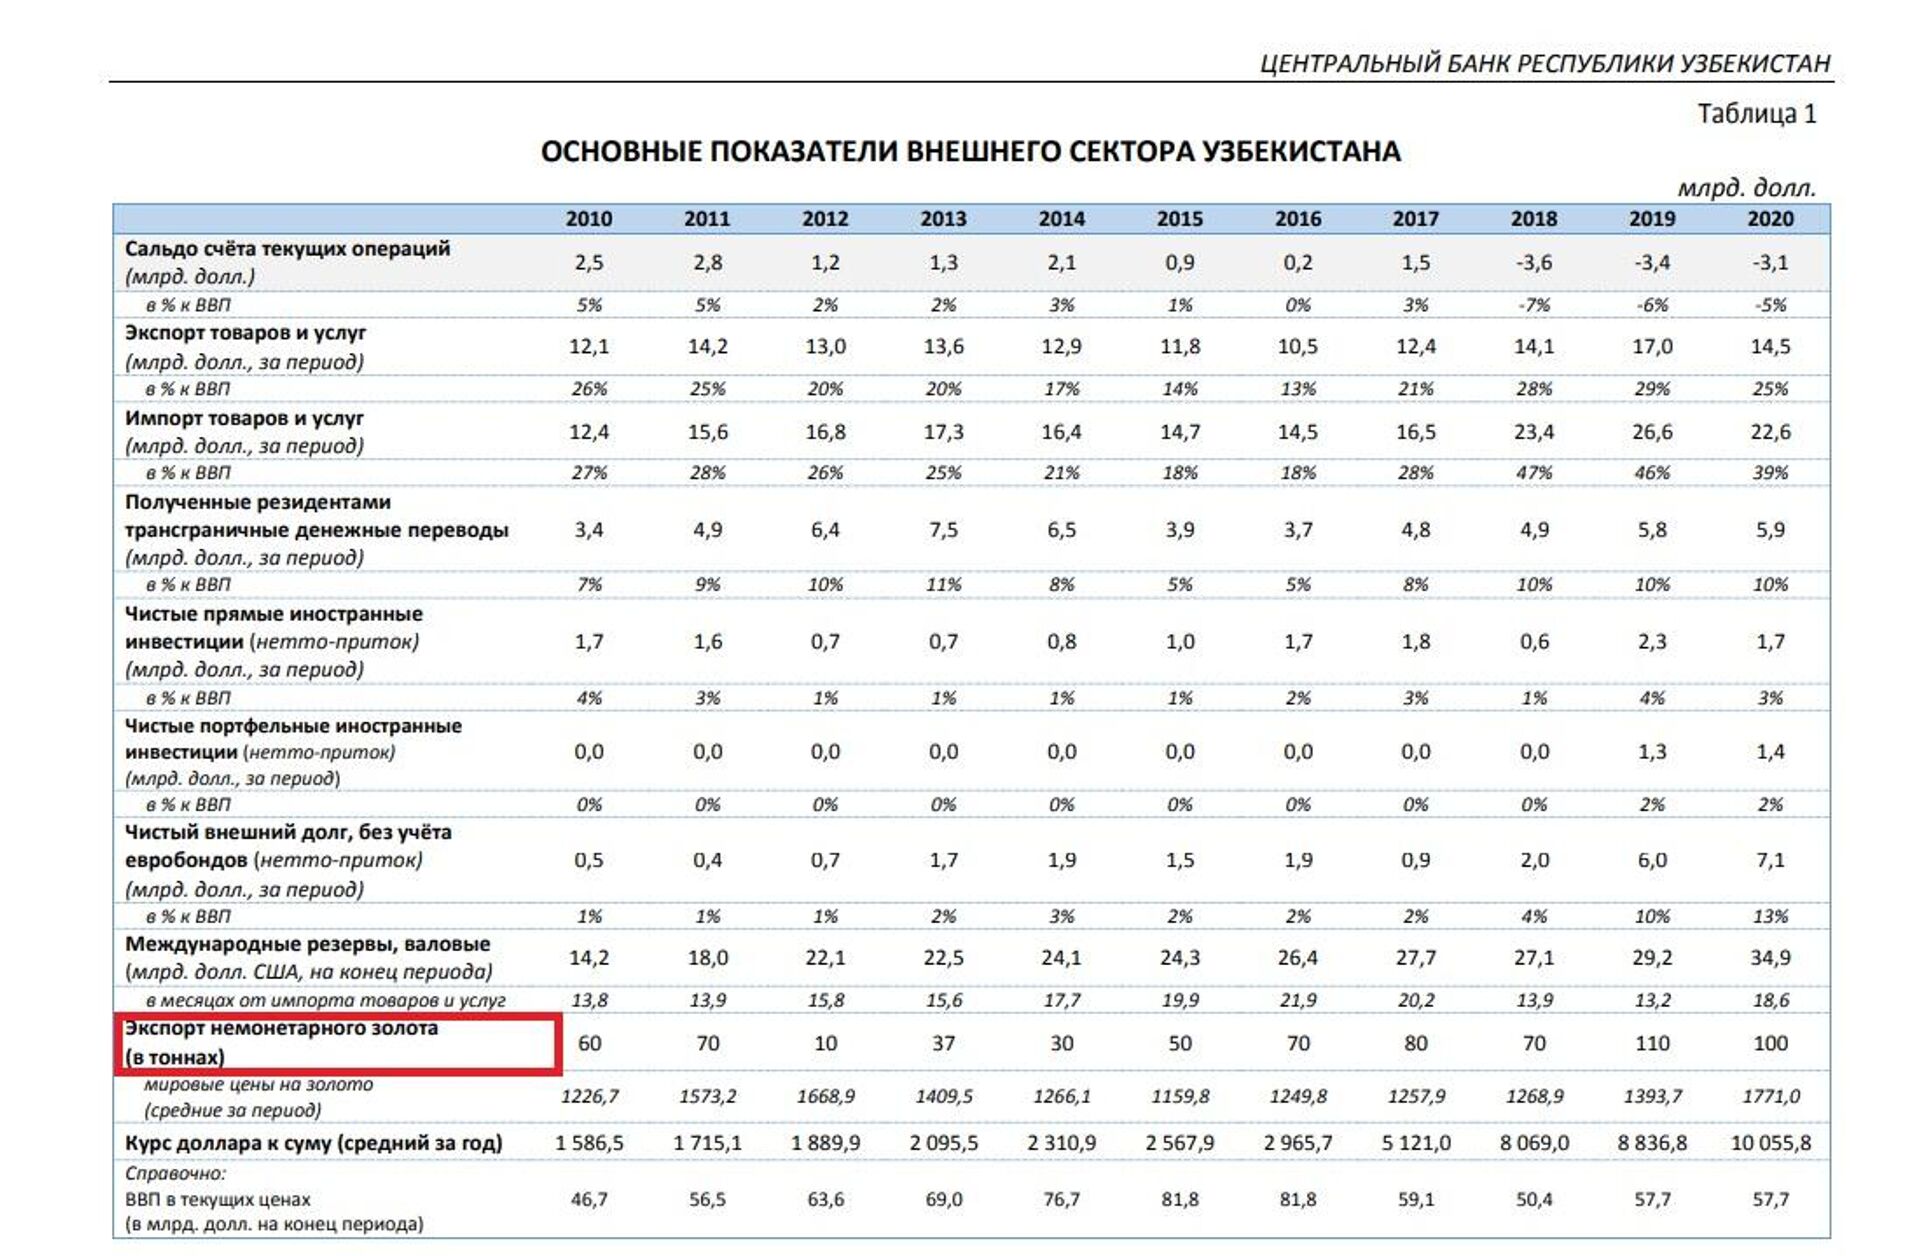 Основные показатели внешнего сектора Узбекистана в 2010-2020 гг. - Sputnik Узбекистан, 1920, 31.03.2021